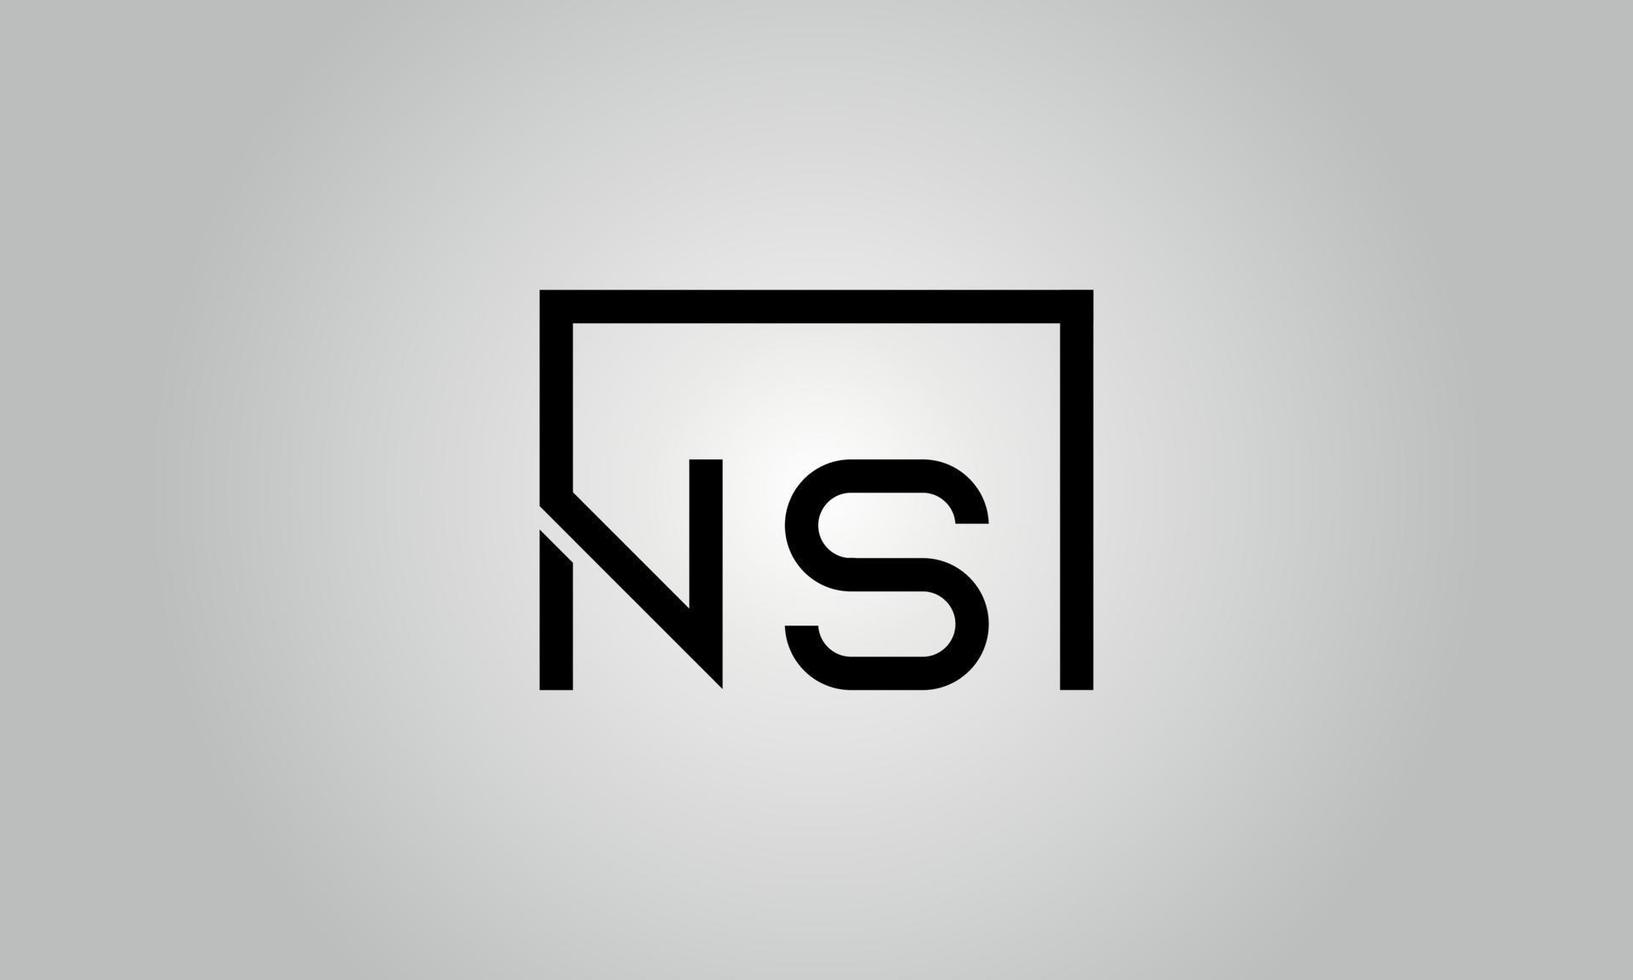 Buchstabe ns Logo-Design. ns-Logo mit quadratischer Form in schwarzen Farben Vektor kostenlose Vektorvorlage.